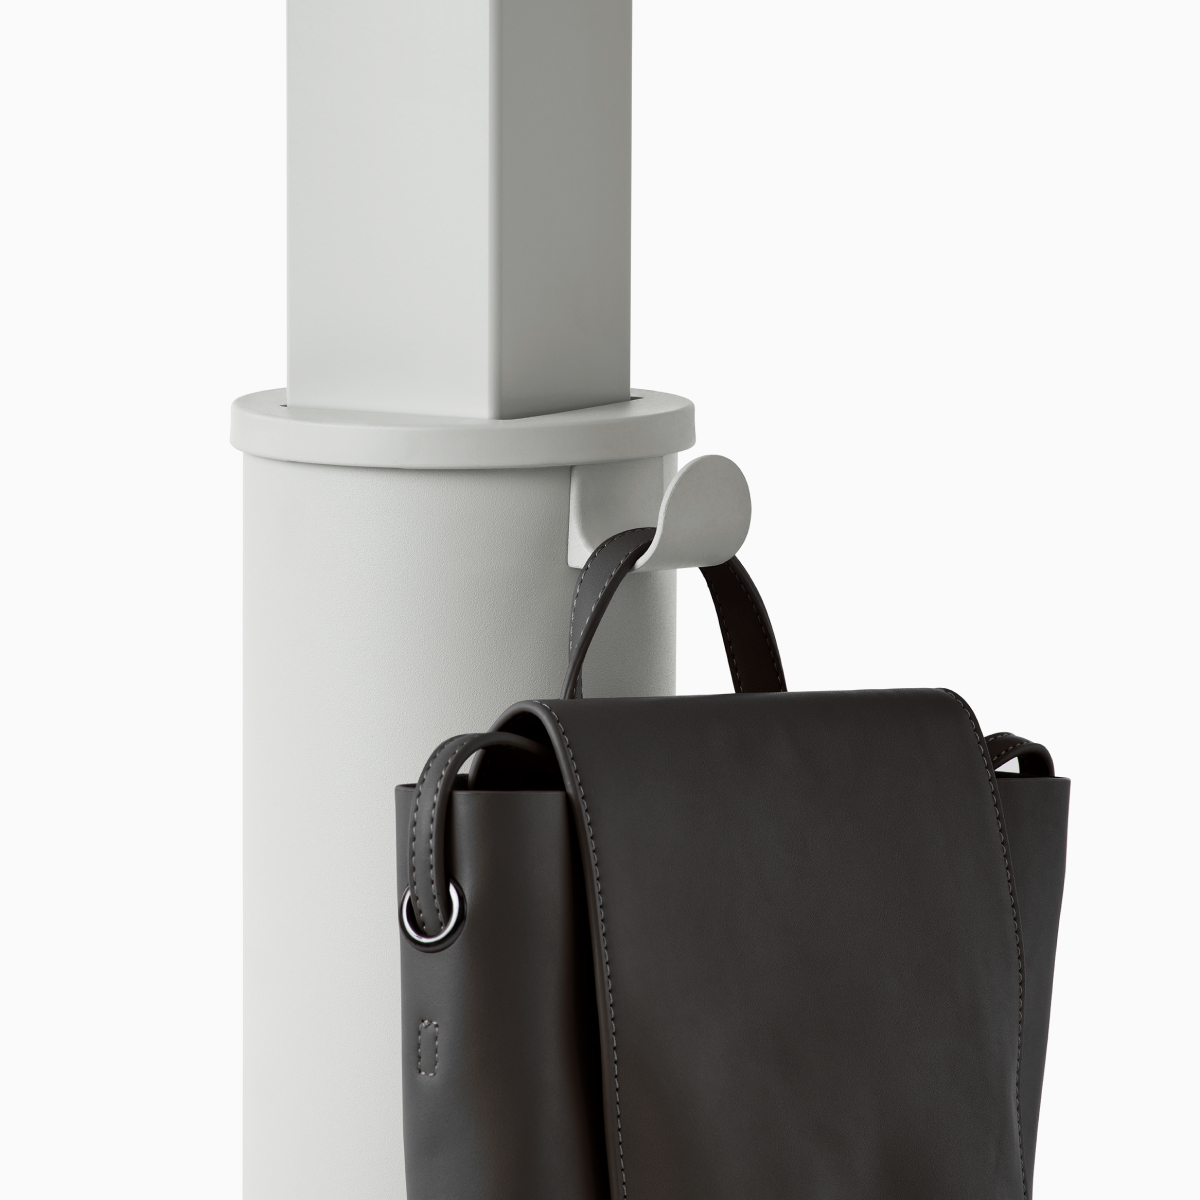 Detalhe de uma coluna da Mesa Sit-to-Stand OE1 cinza com bolsa preta pendurada no gancho para bolsa.